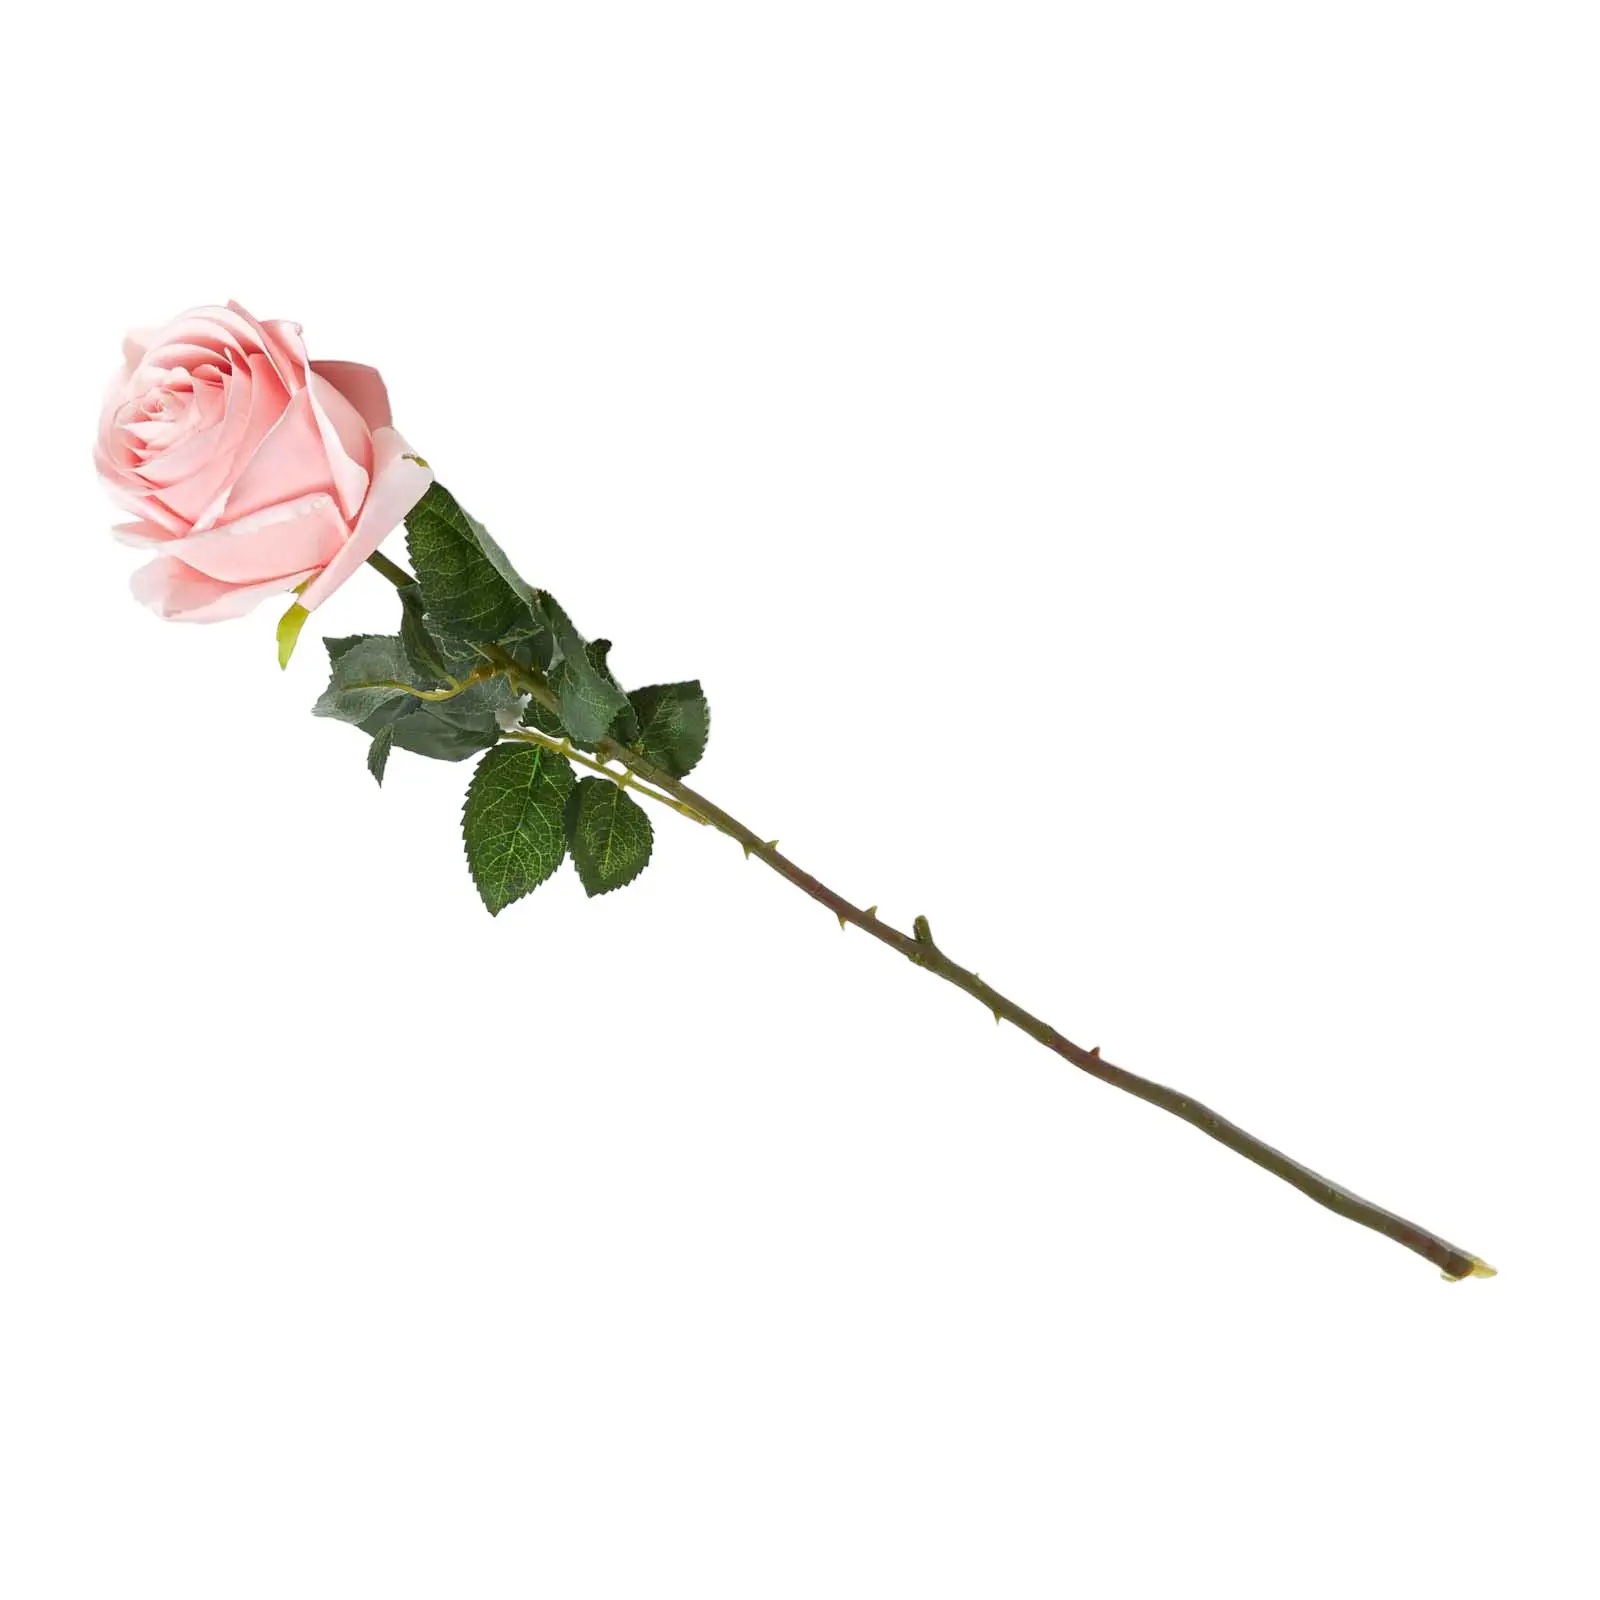 K眉nstliche rosa Rose mit langem Stiel